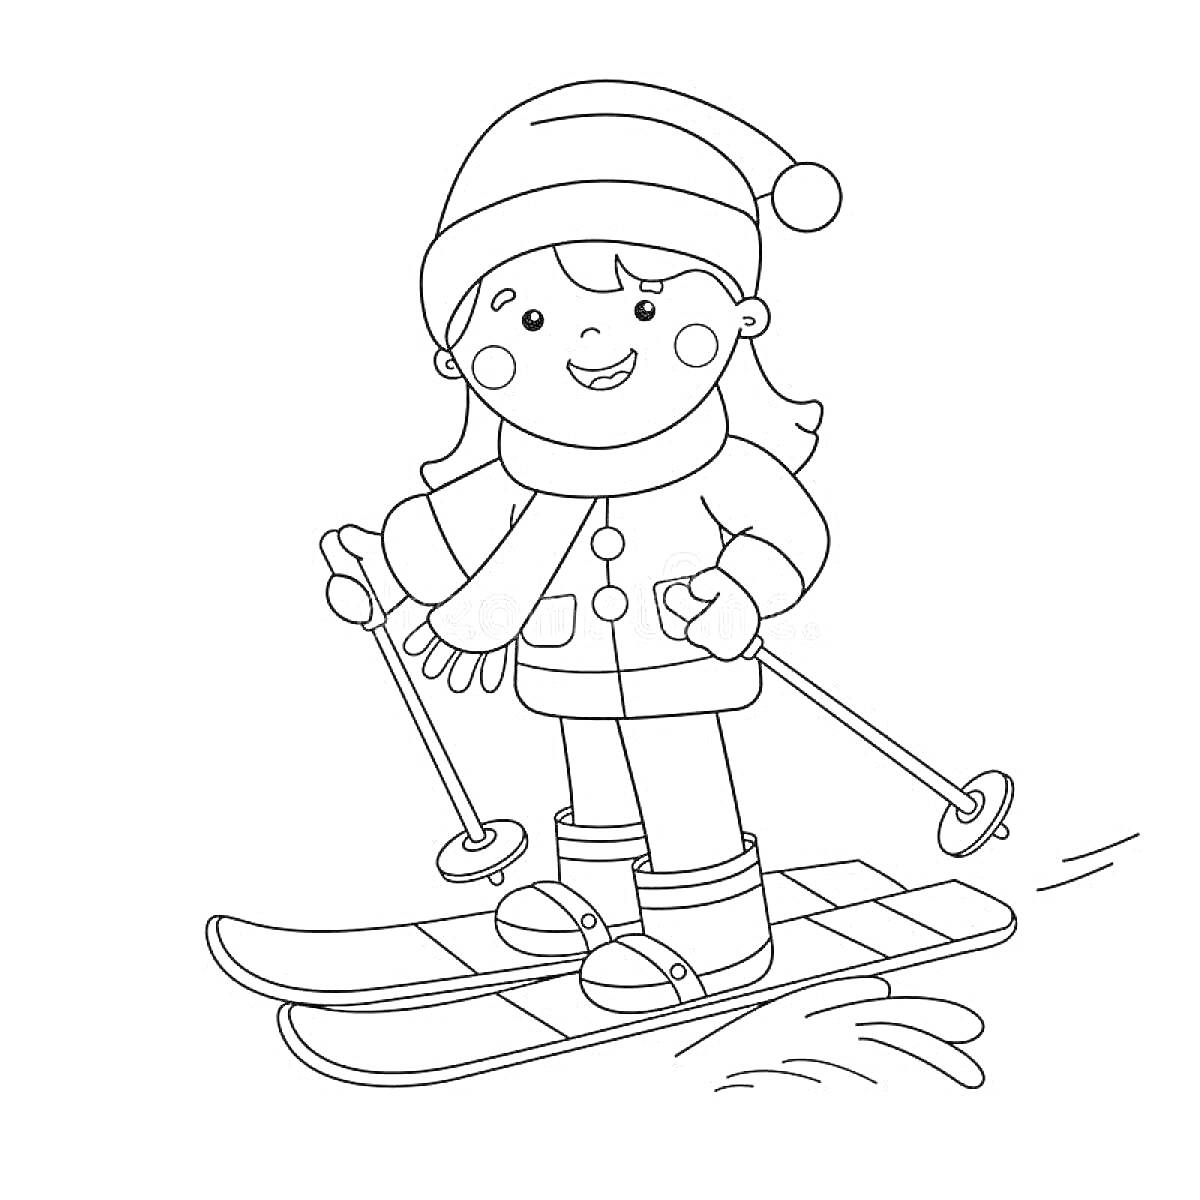 Раскраска Лыжник в зимней одежде с шапкой, шарфом и лыжными палками